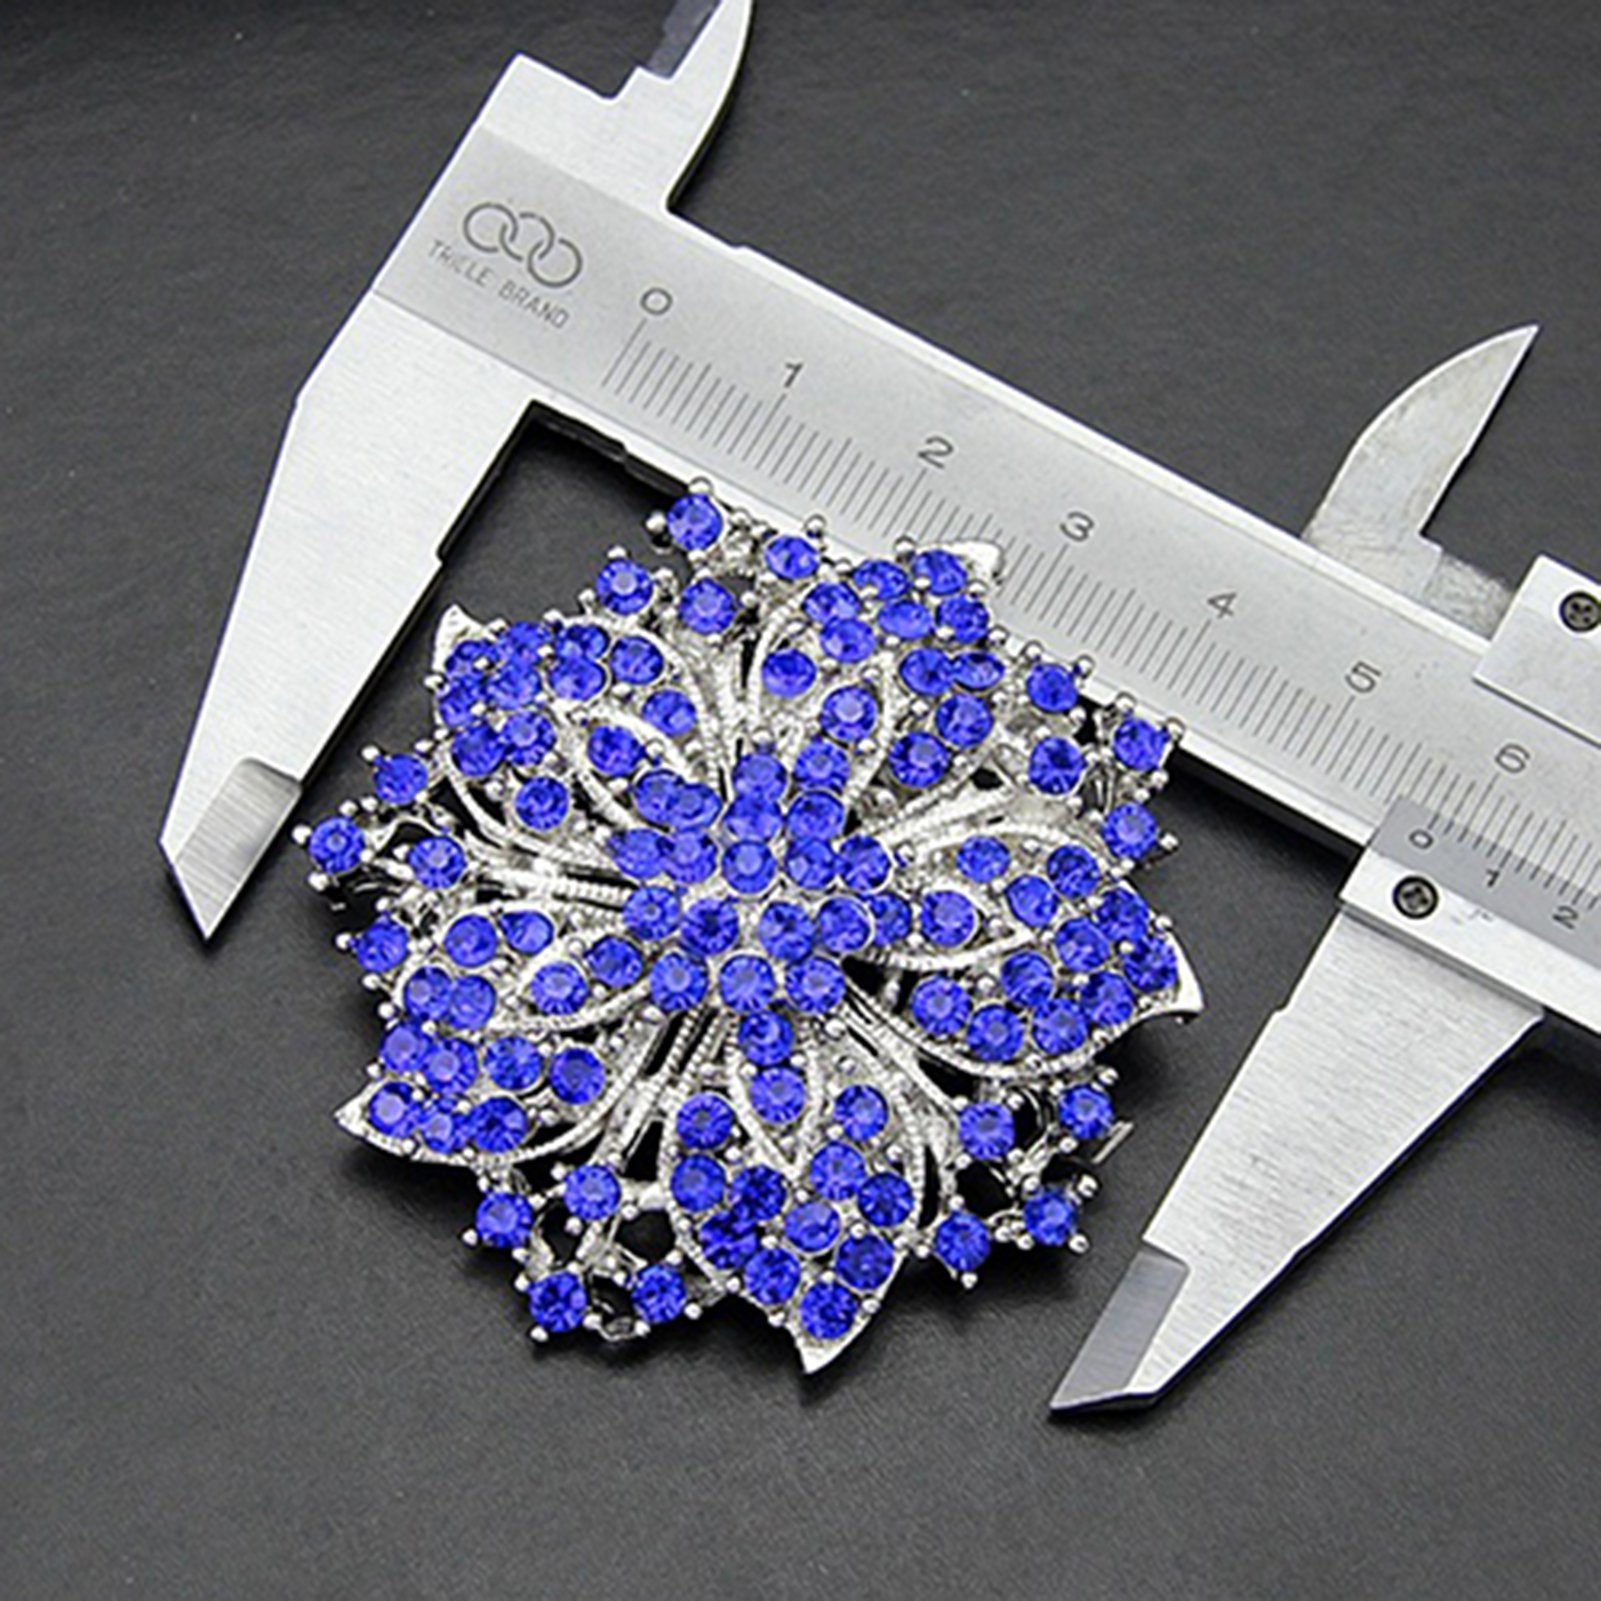 Corsage inspirierte Pin, Braut Vintage Brosche Blume Kristall Brosche Rutaqian Brosche